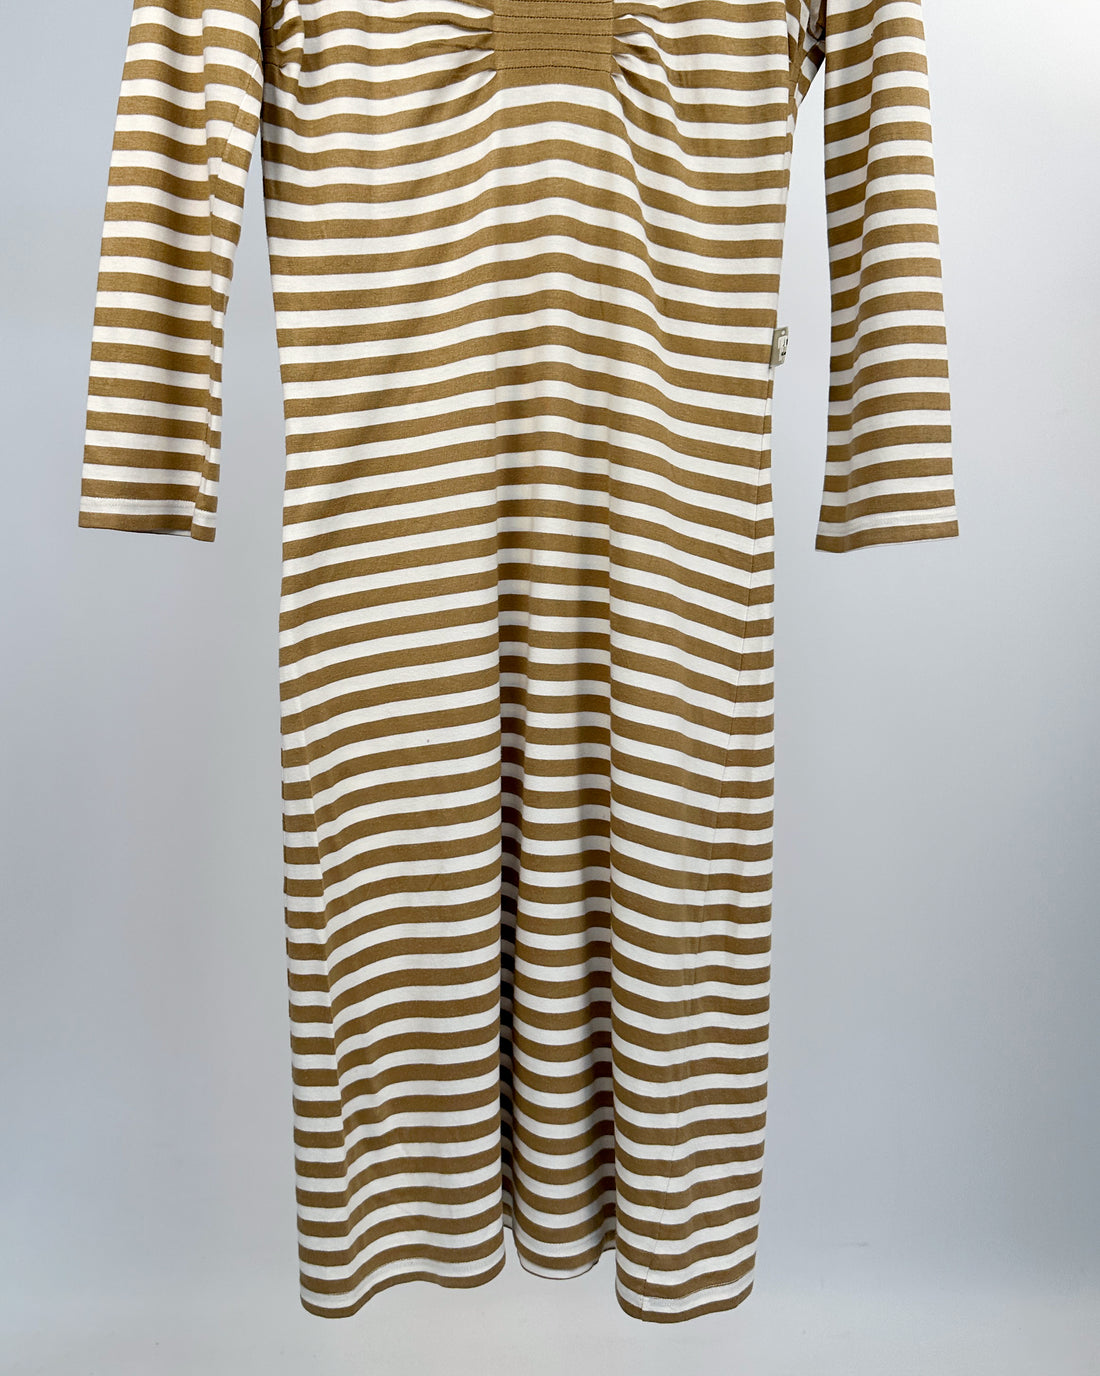 Jean Paul Gaultier Beige Striped Dress 1990's